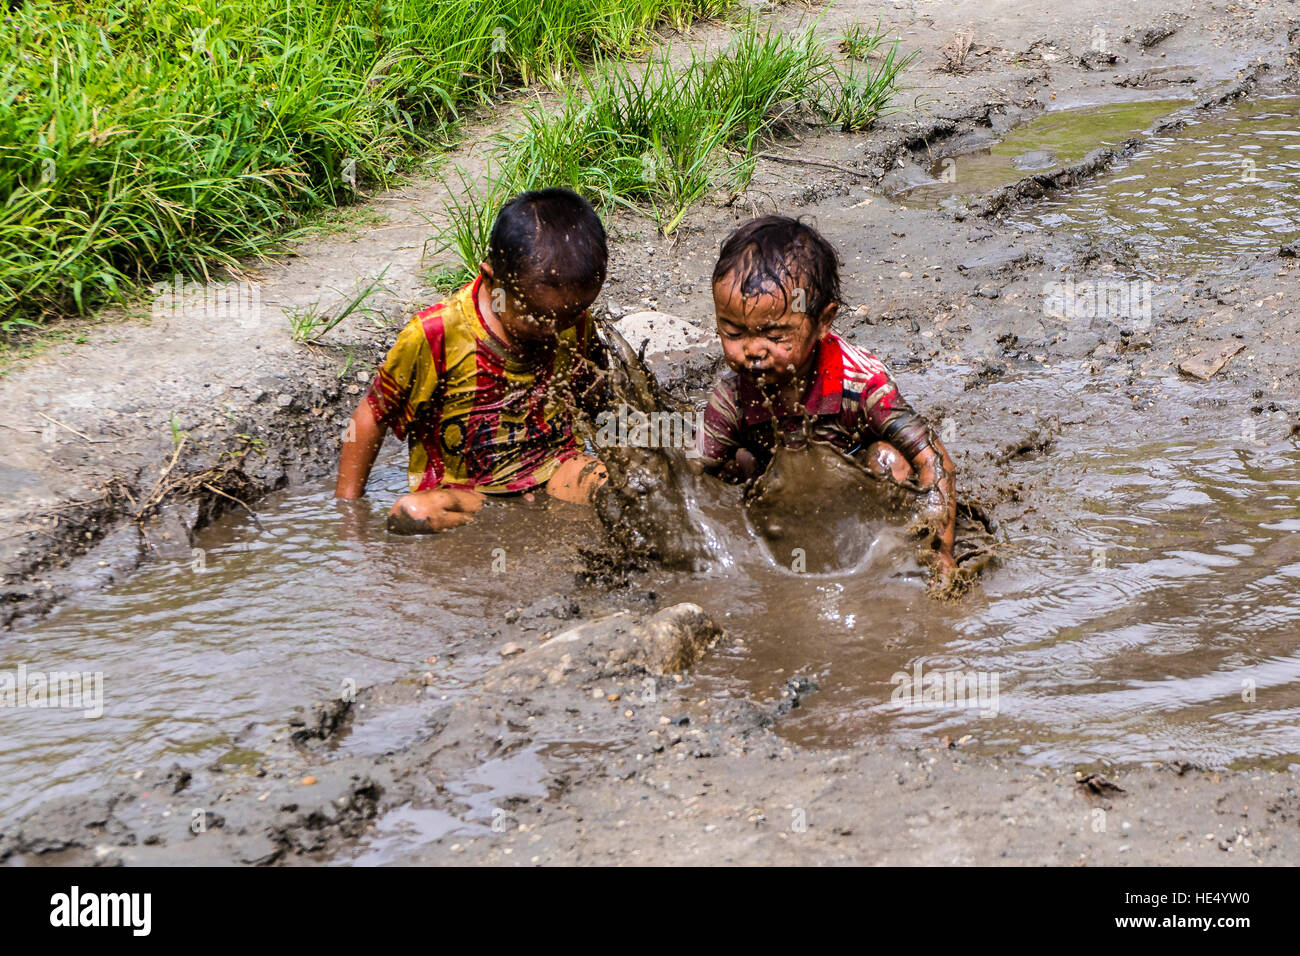 Les deux garçons, seuls port shirts, jouent dans la boue d'un étang Banque D'Images